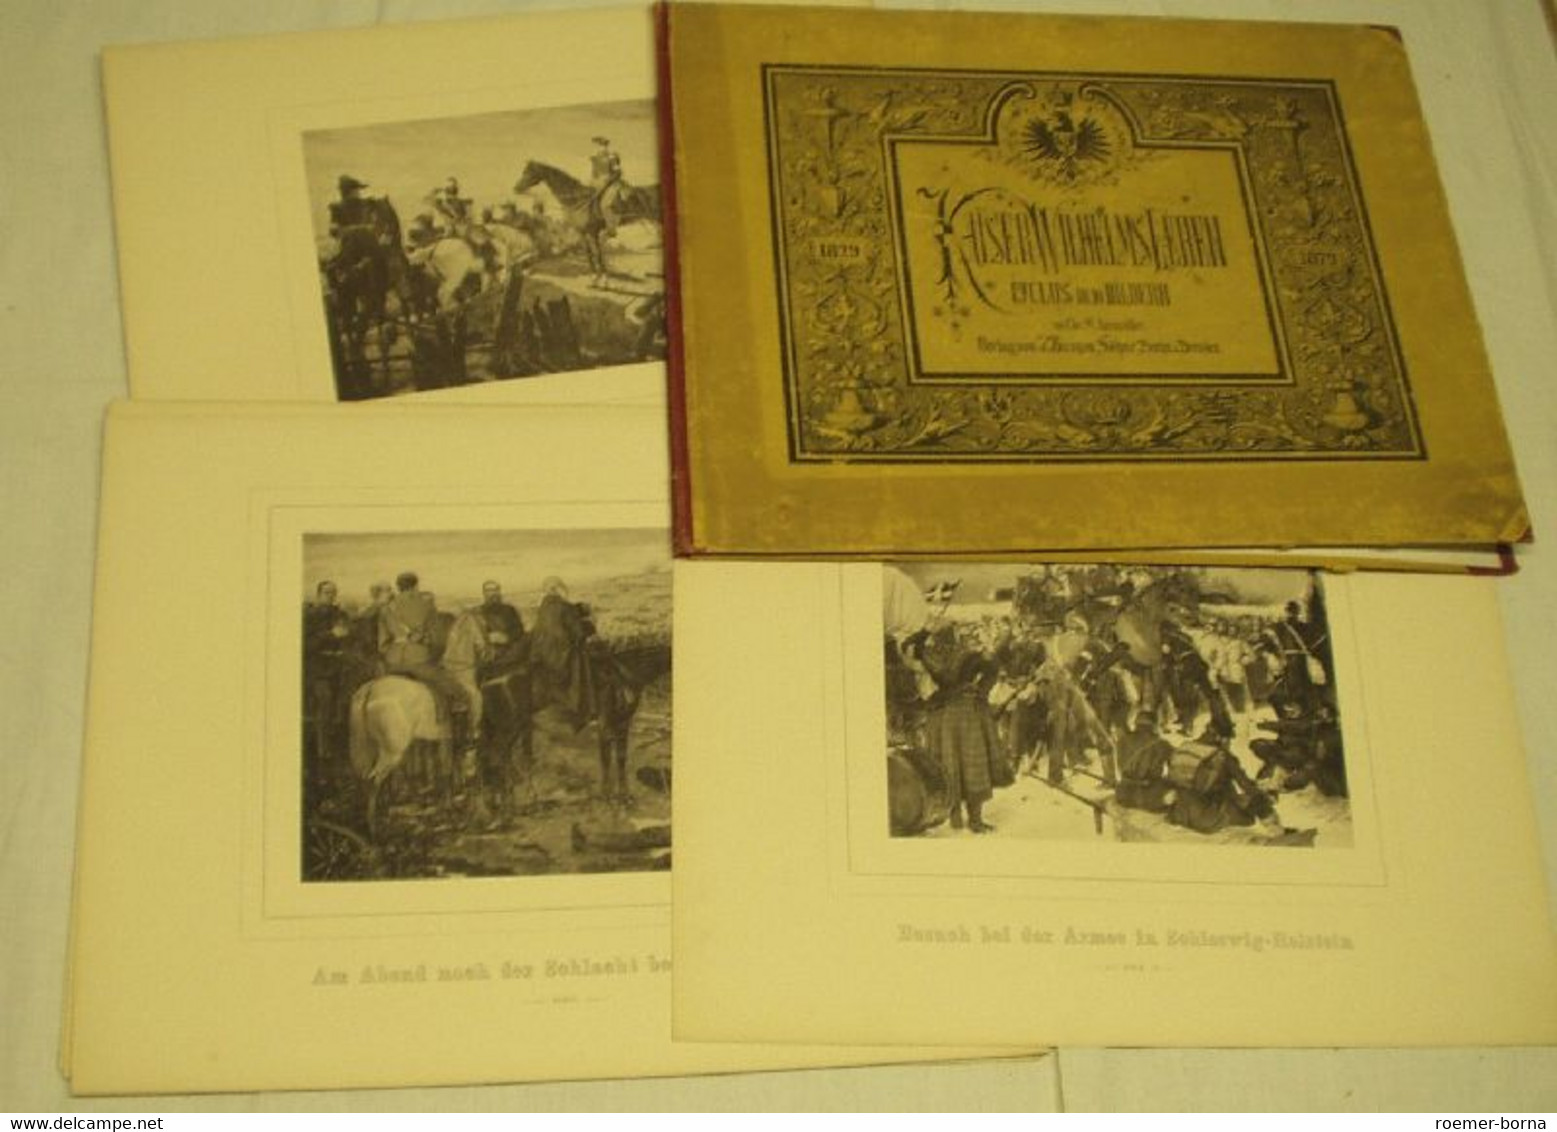 Kaiser Wilhelms Leben Cyclus In 10 Bildern 1829 - 1871 - Biographien & Memoiren